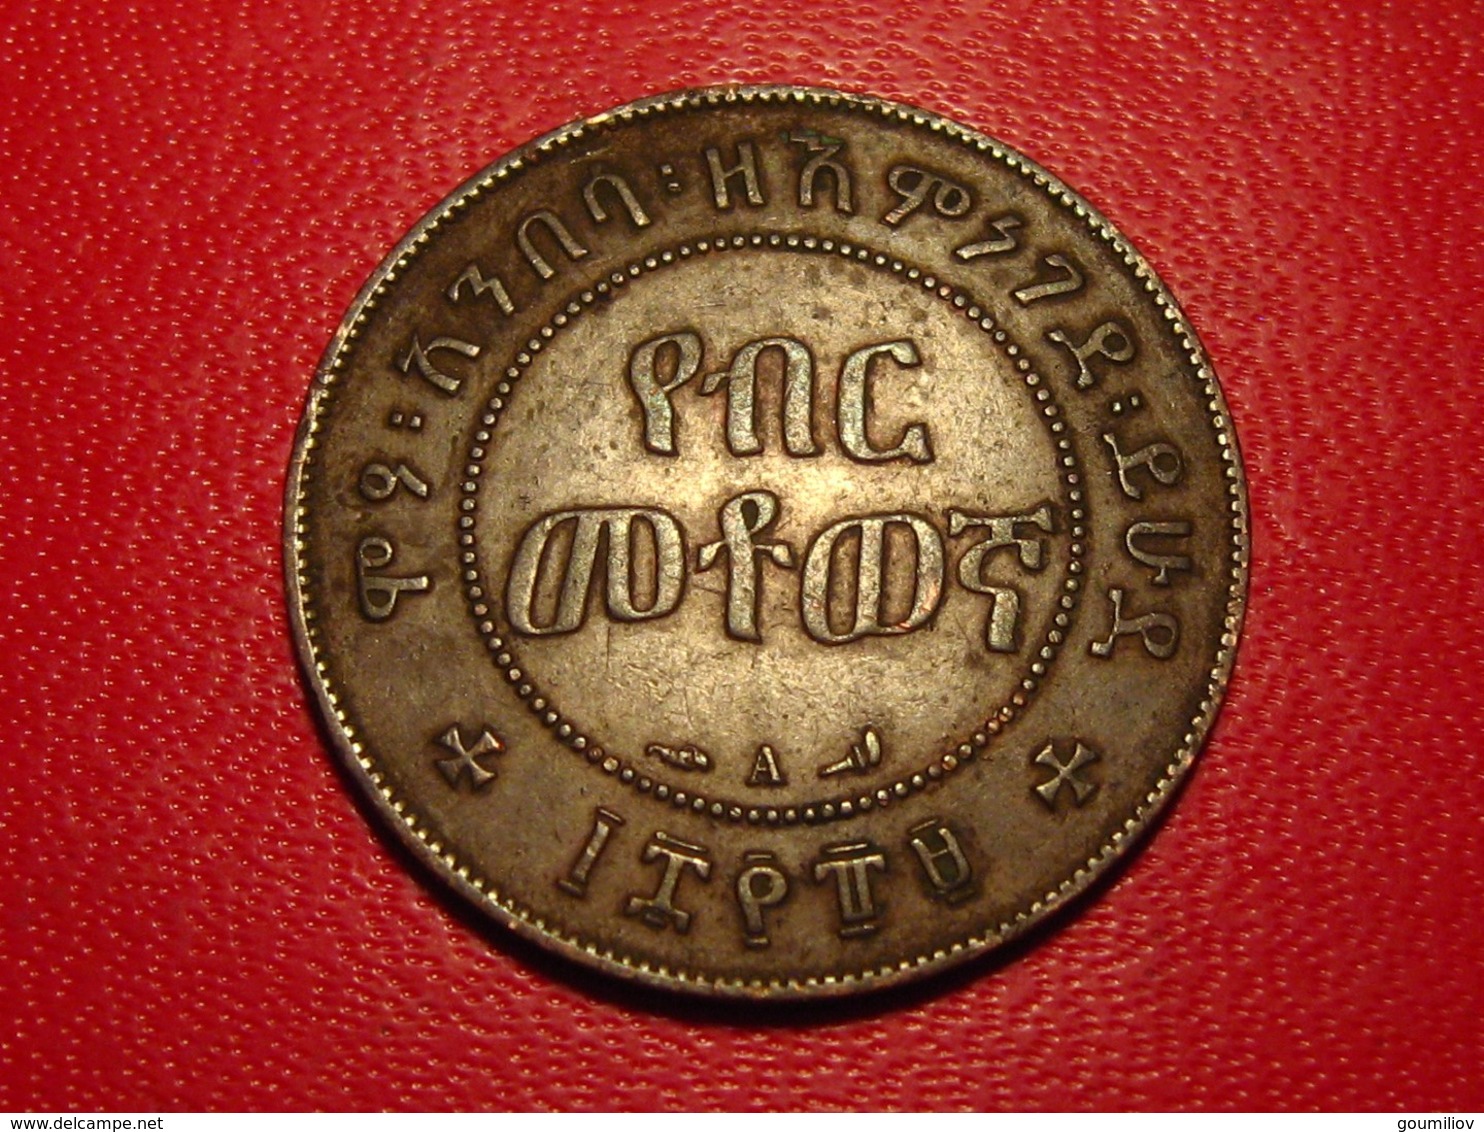 Ethiopie - 1/100 birr (Matonya) 1889 - Superbe 8551